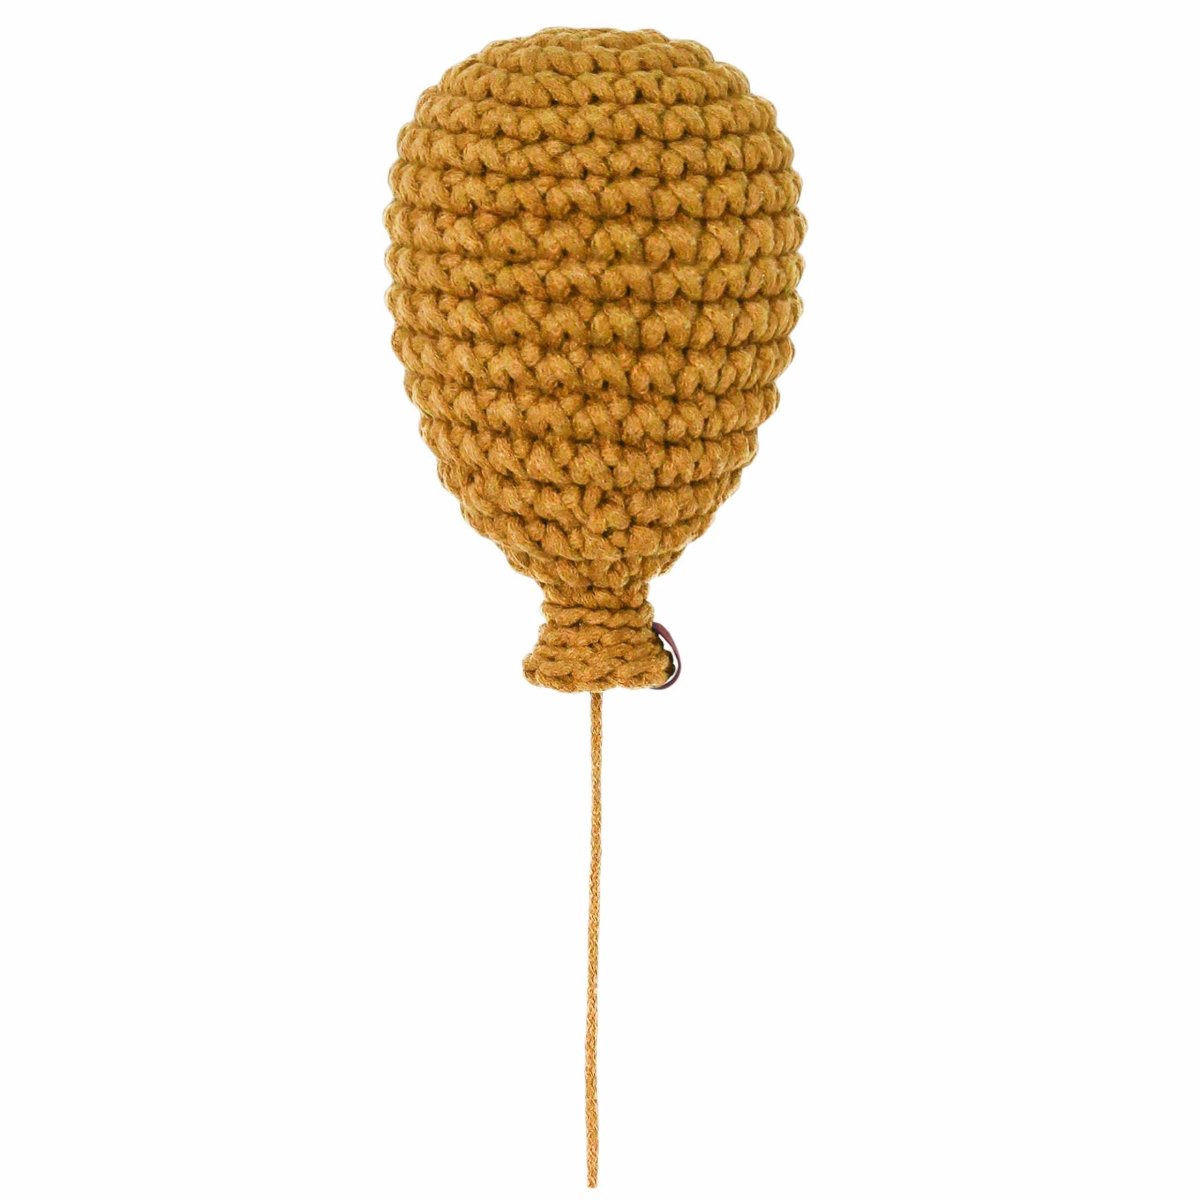 Crochet balloon | MUSTARD - Zuri House